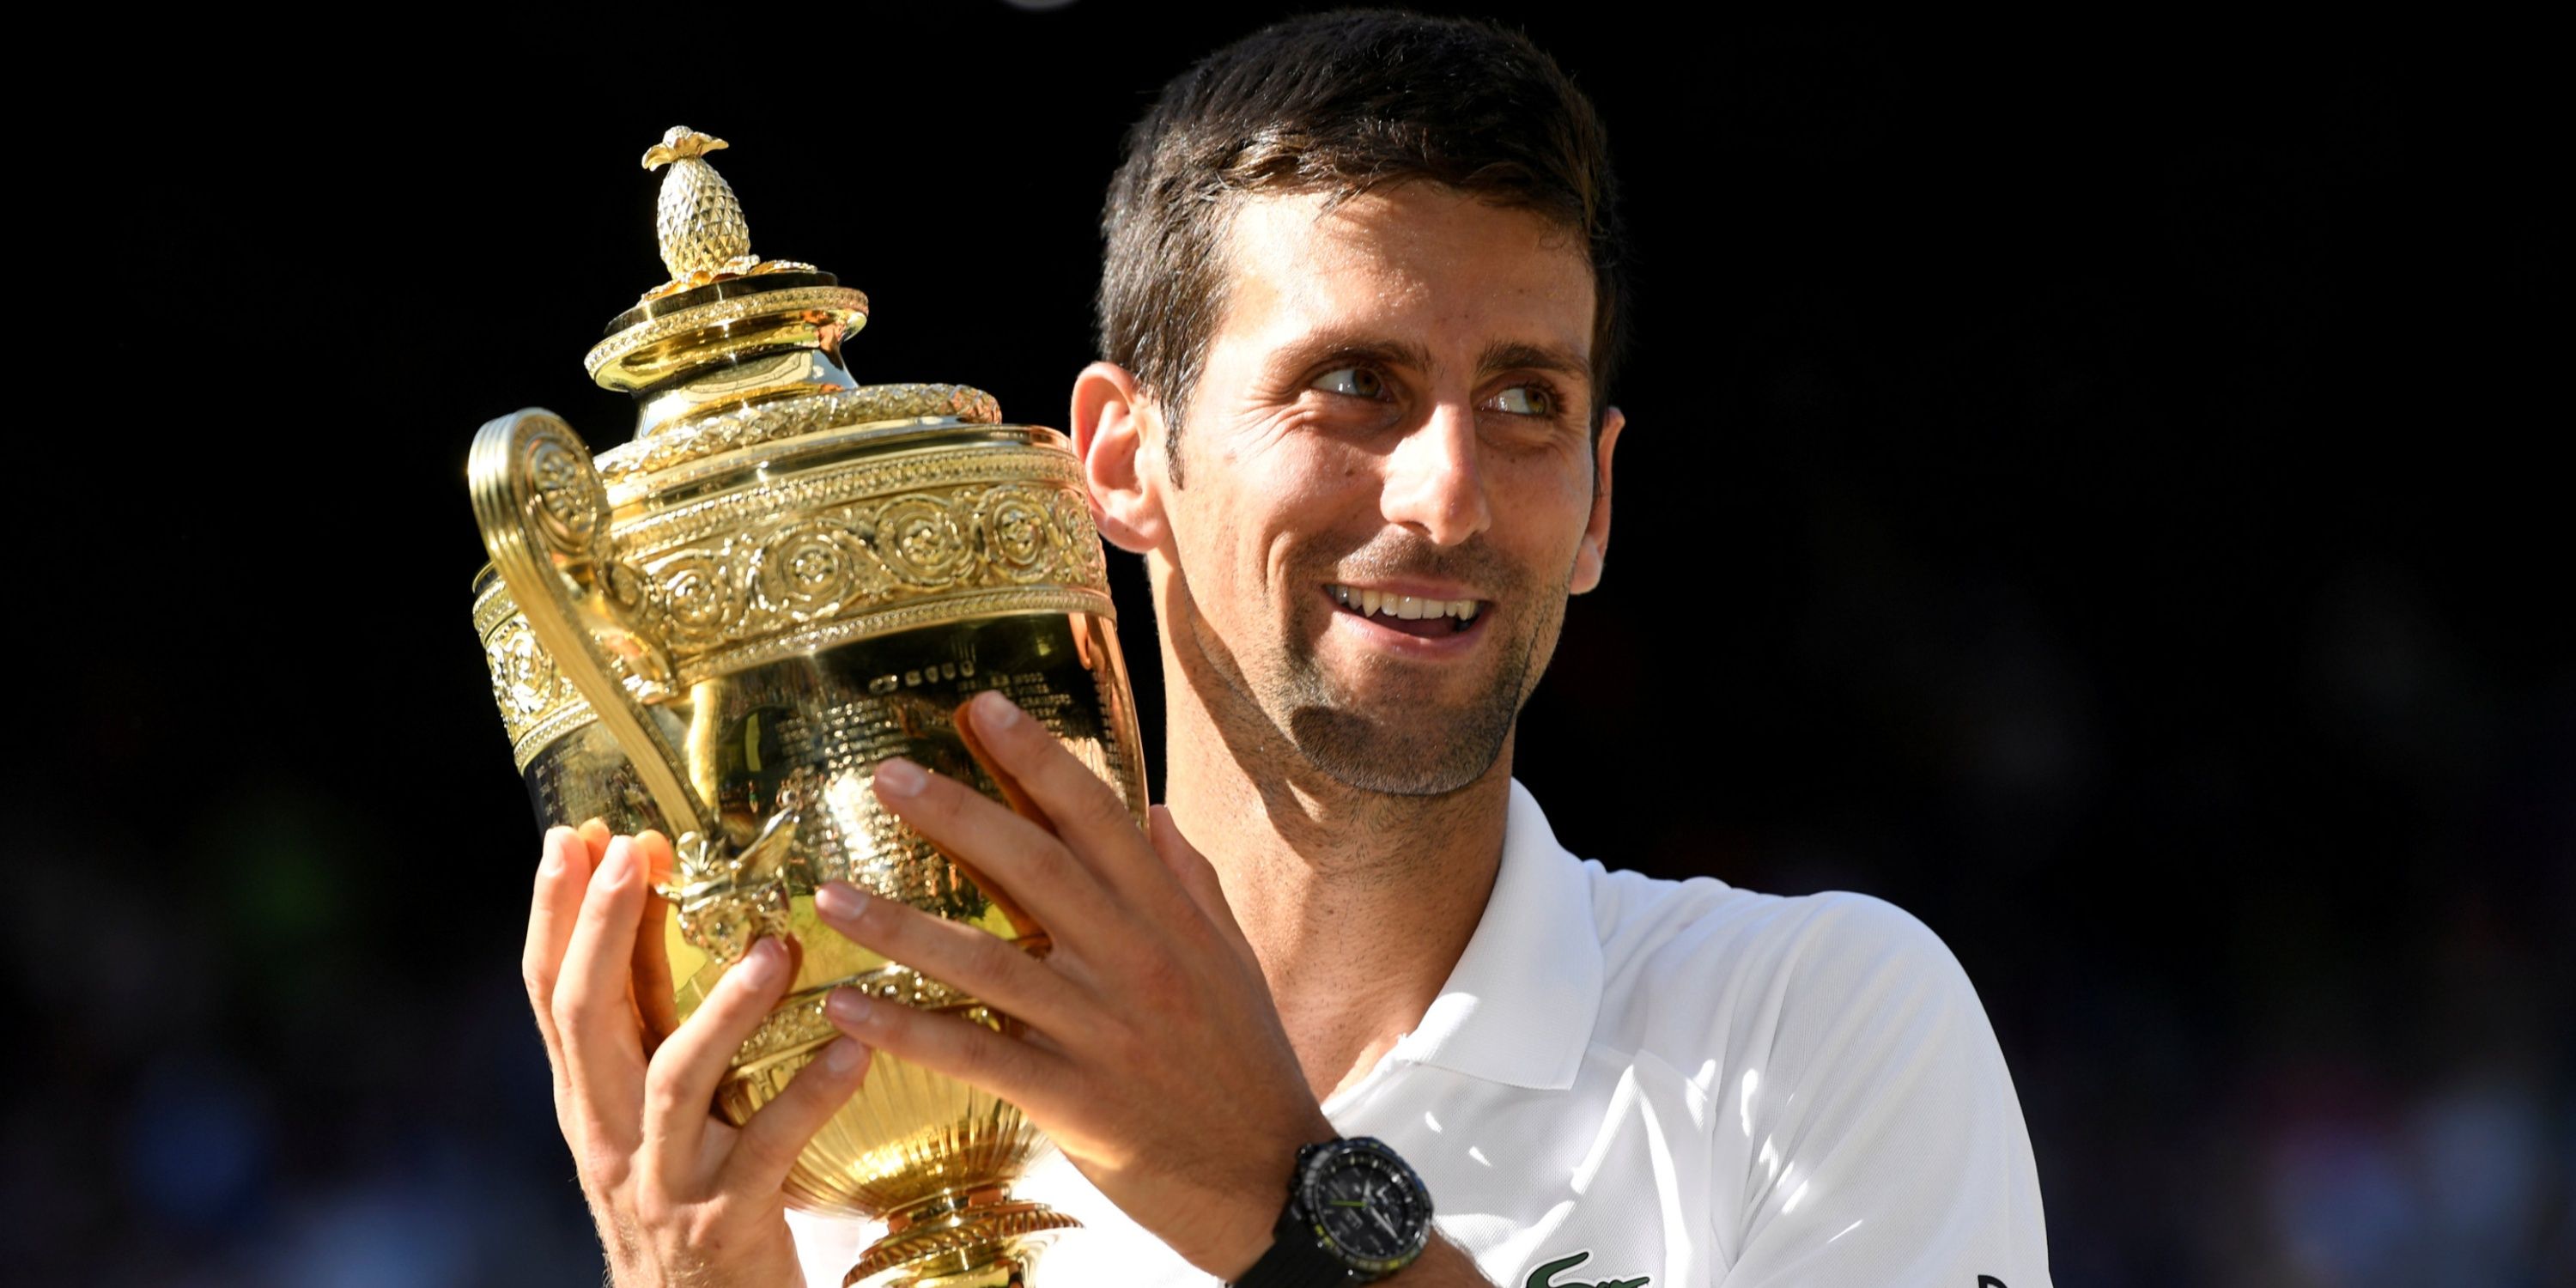 Serbia's Novak Djokovic celebrates with the trophy